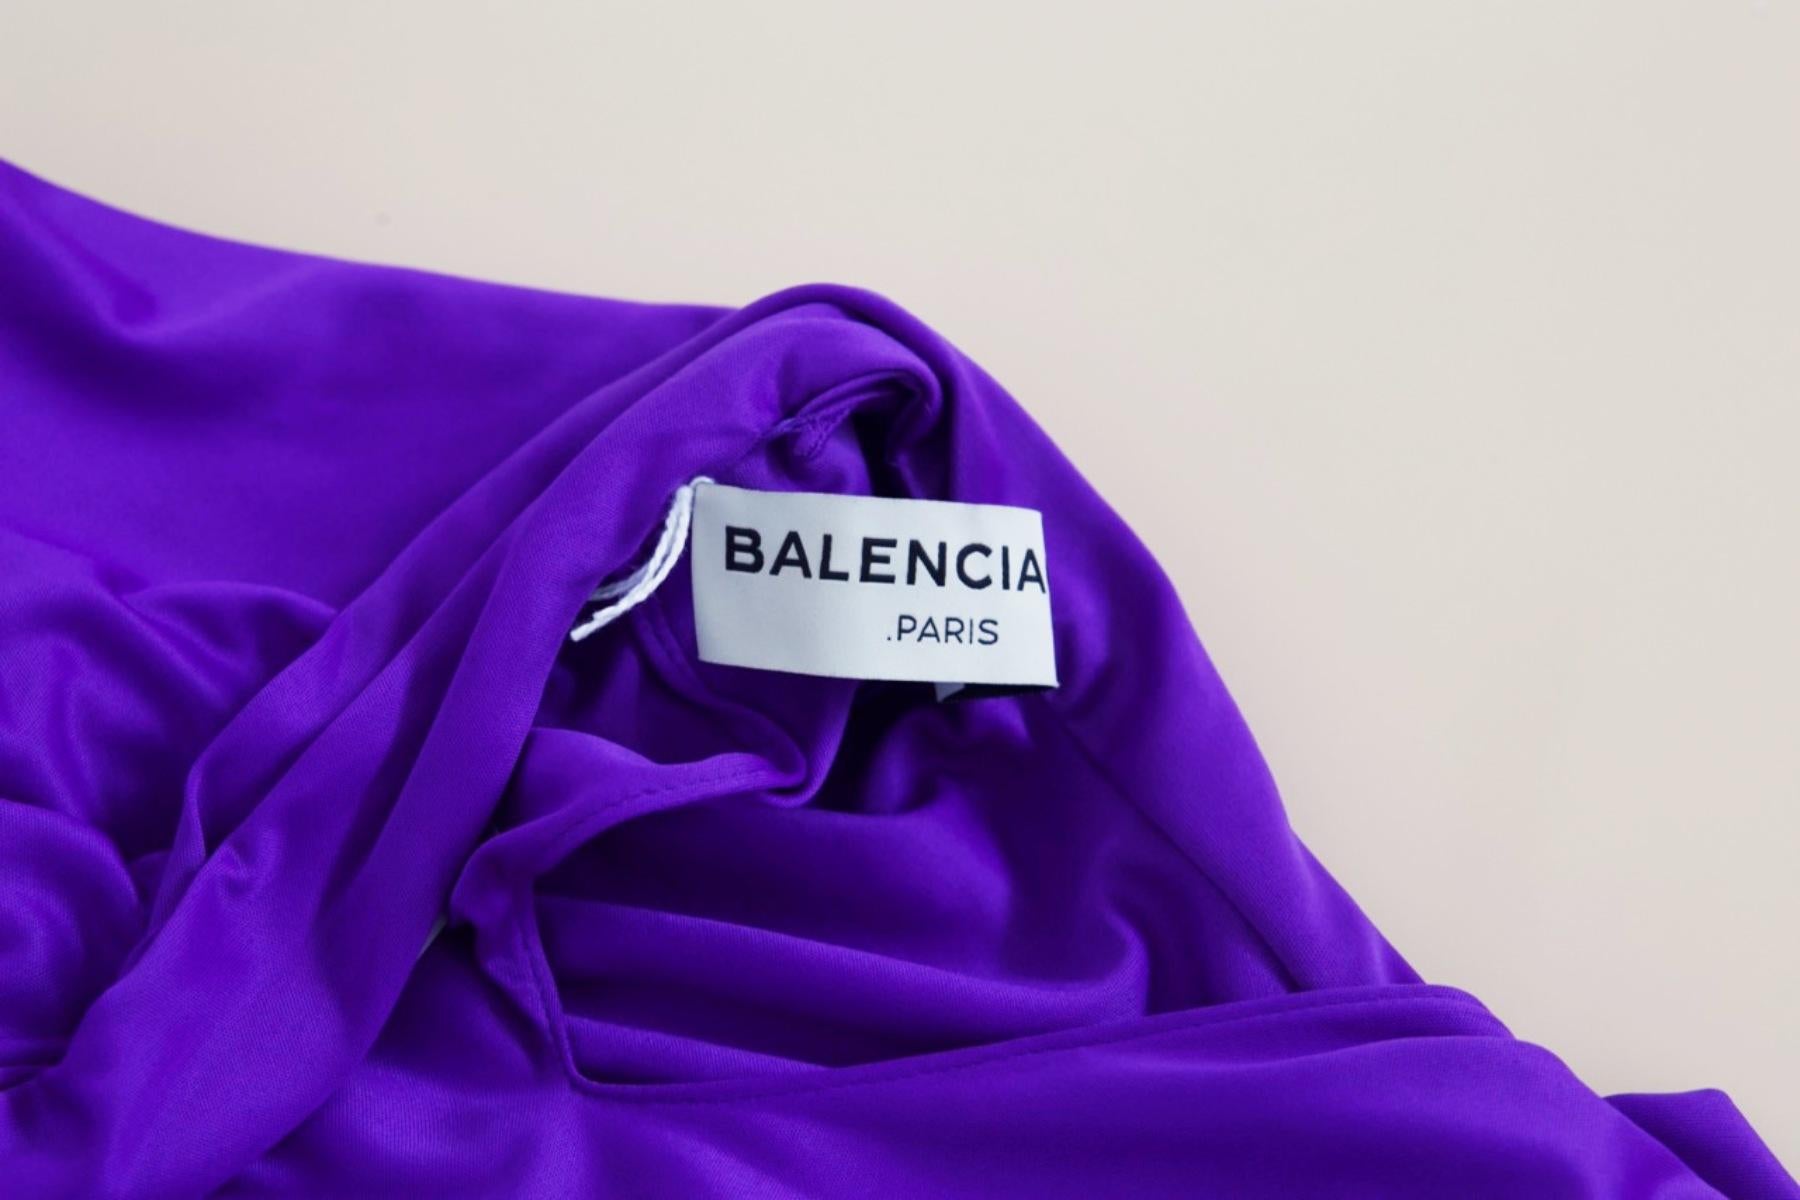 Robe vintage sexy de couleur violette conçue par Balenciaga dans les années 1990, fabriquée en Italie. ÉTIQUETTE ORIGINALE.
La robe est une mini-robe d'un violet accessible, très flamboyant. Il a une coupe très ajustée et une jupe courte à hauteur